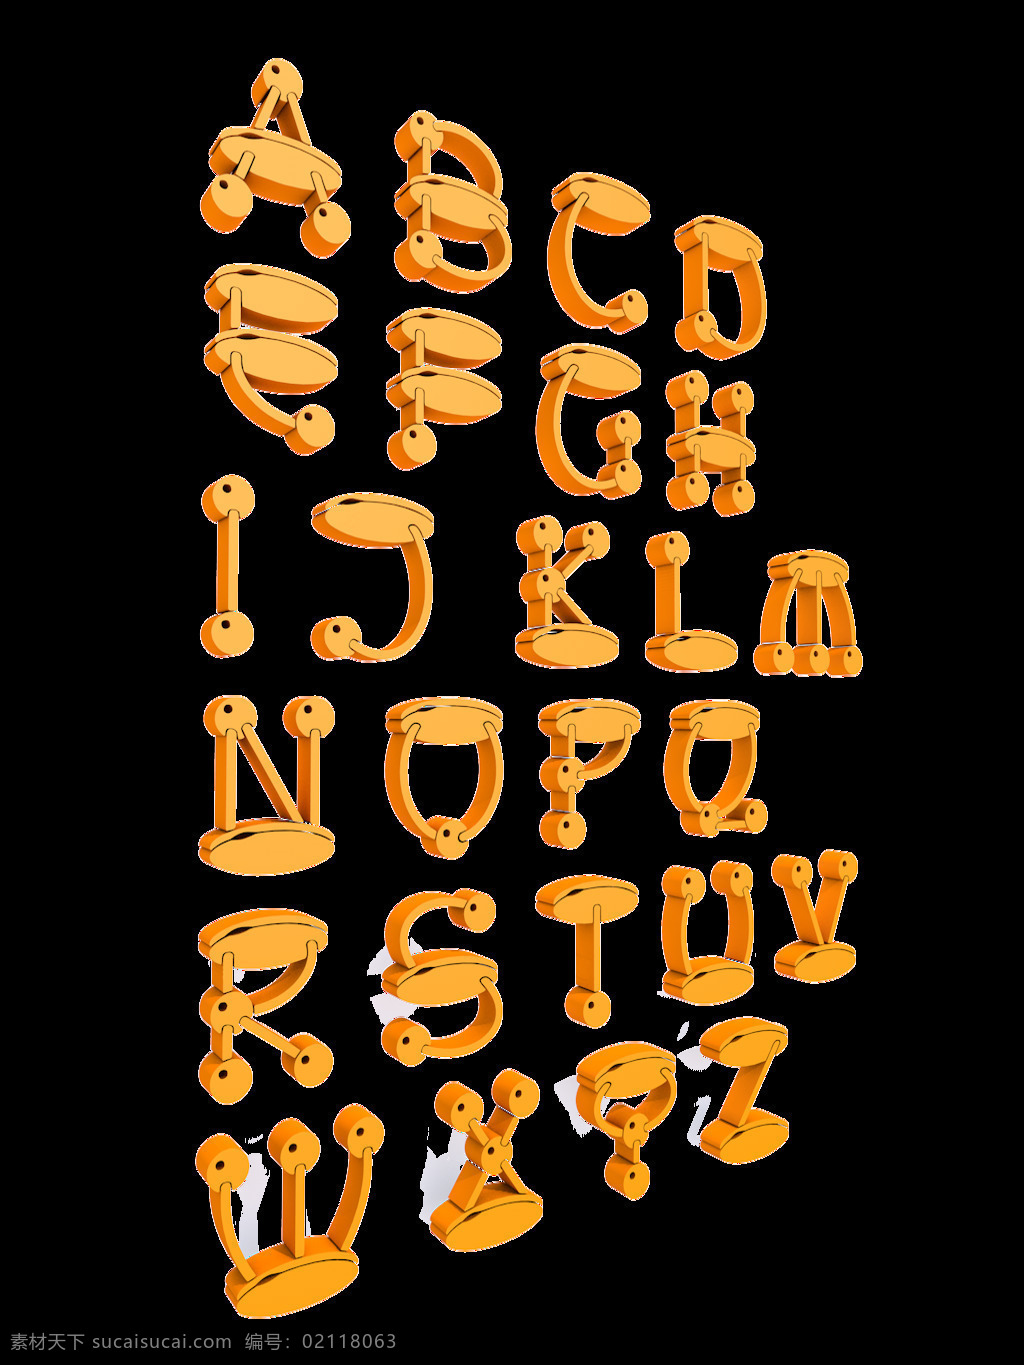 英文 字母 橘 色卡 通 套 图 艺术 字 元素 图案 h m 卡通 a b c d e f g i k l n o p q r s t u v w x y z 橘色 透明素材